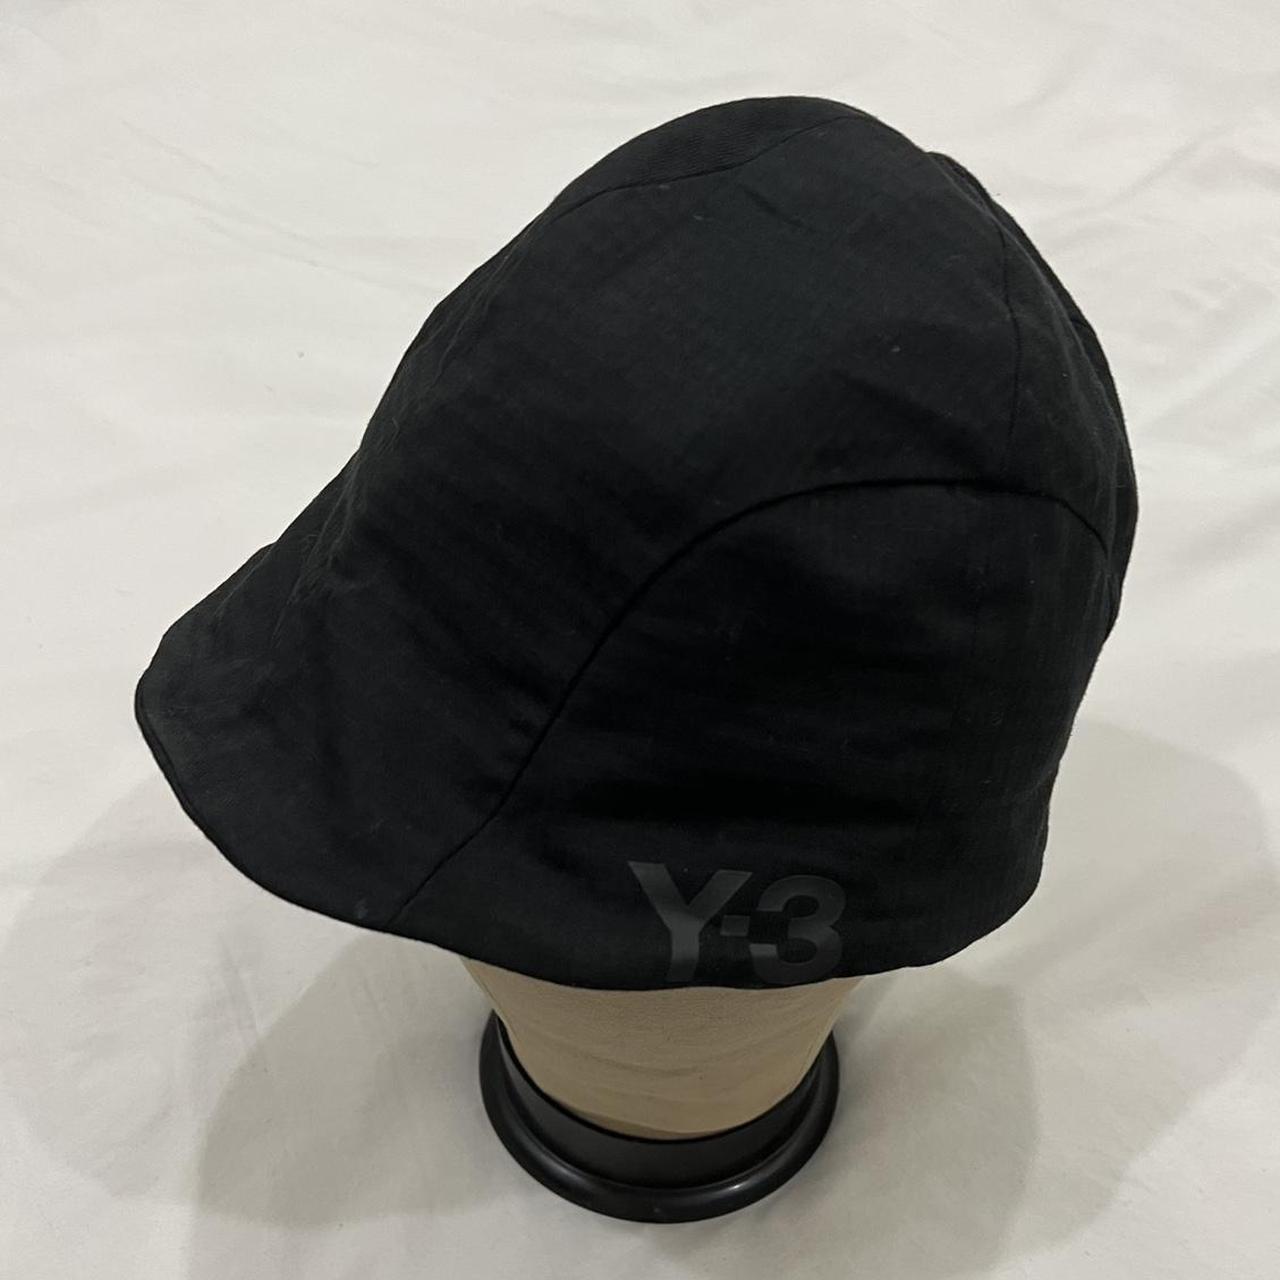 Y-3 Women's Black Hat (2)